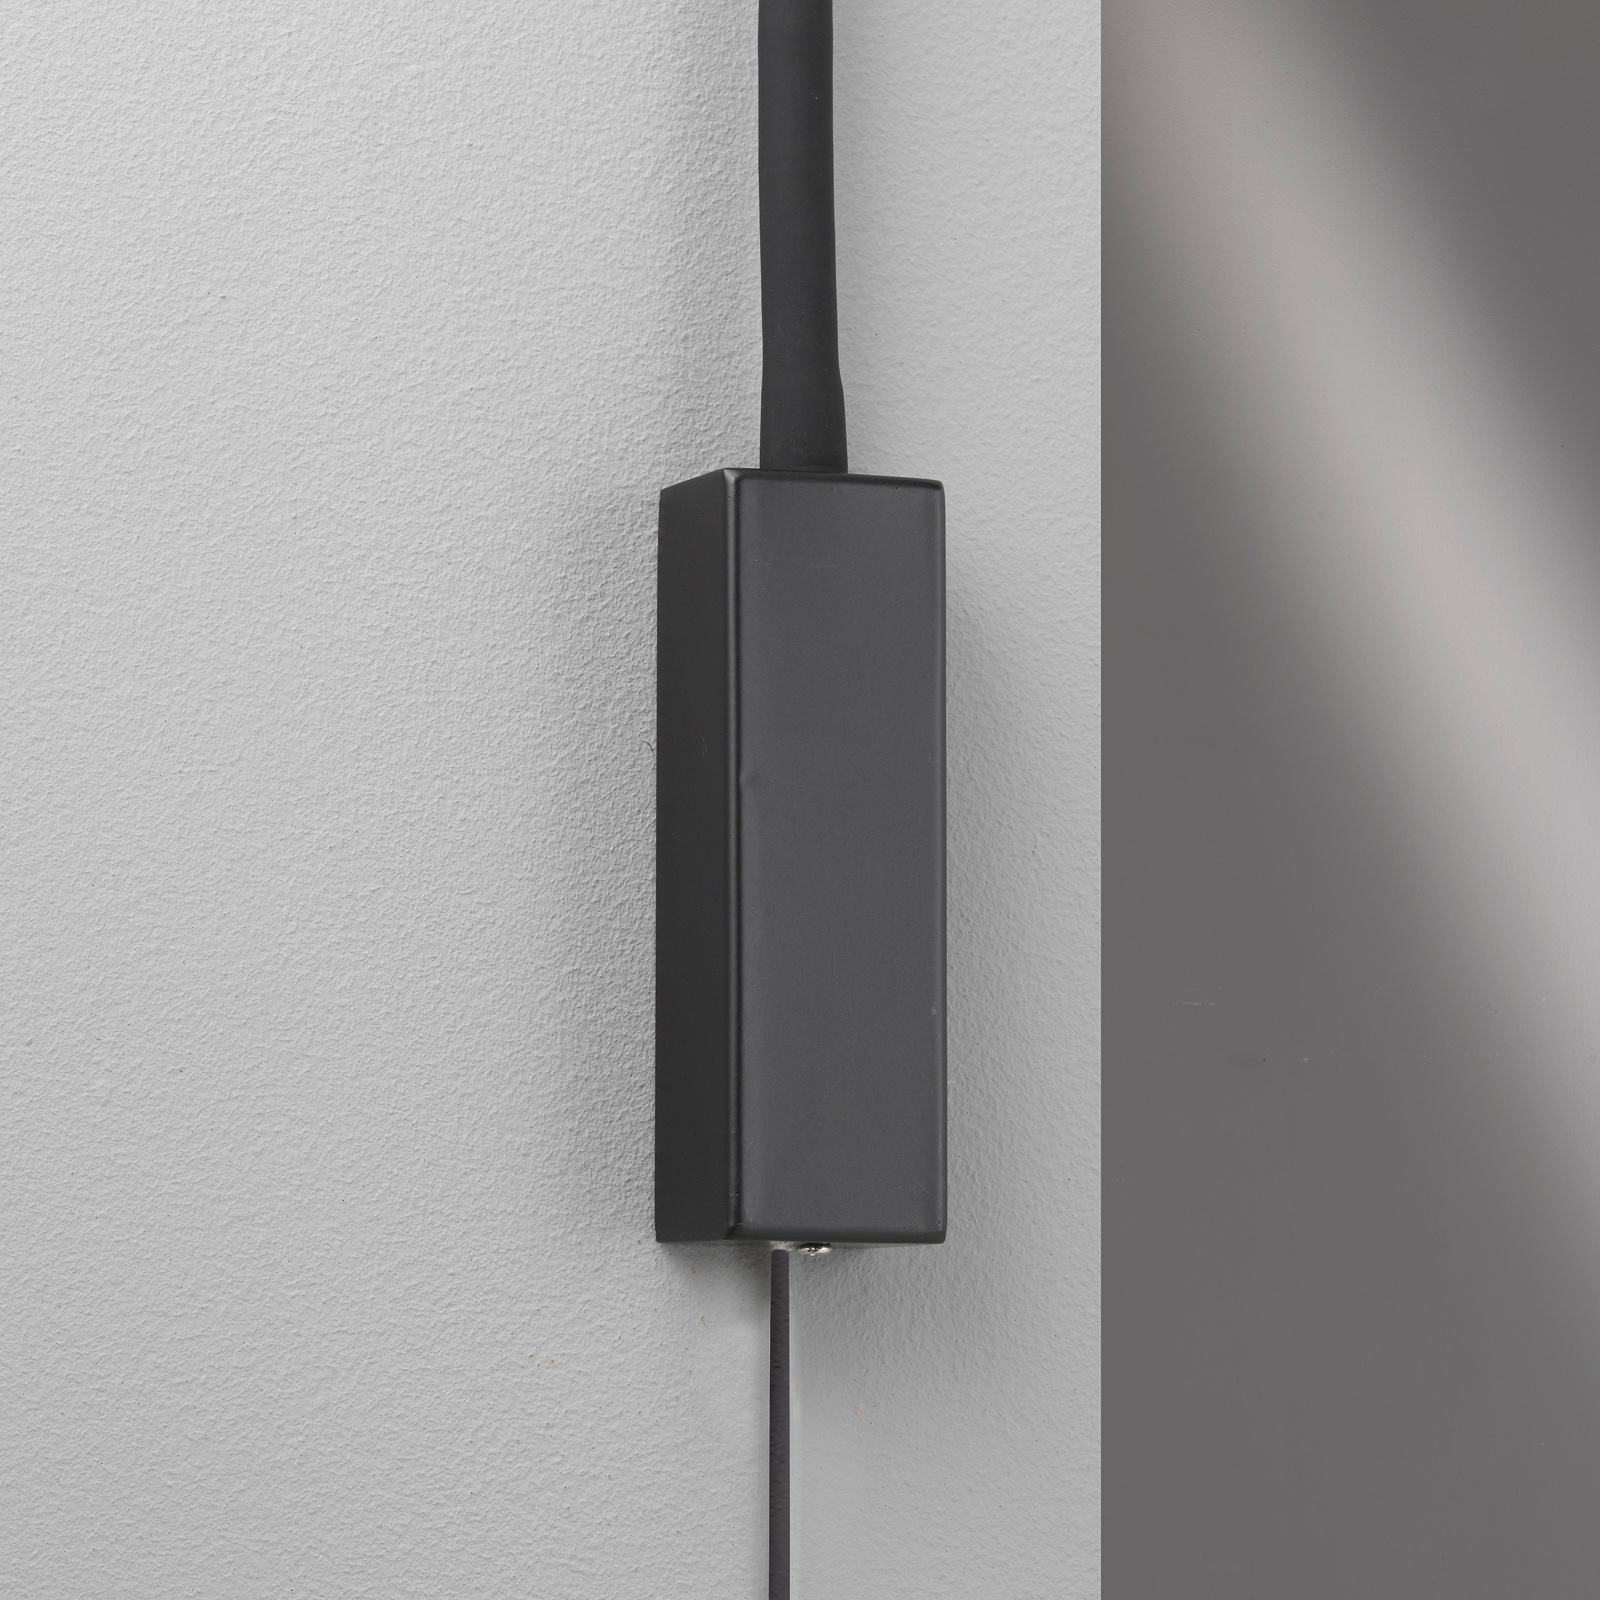 Nástěnné LED svítidlo Sten s ovládáním gesty, černé